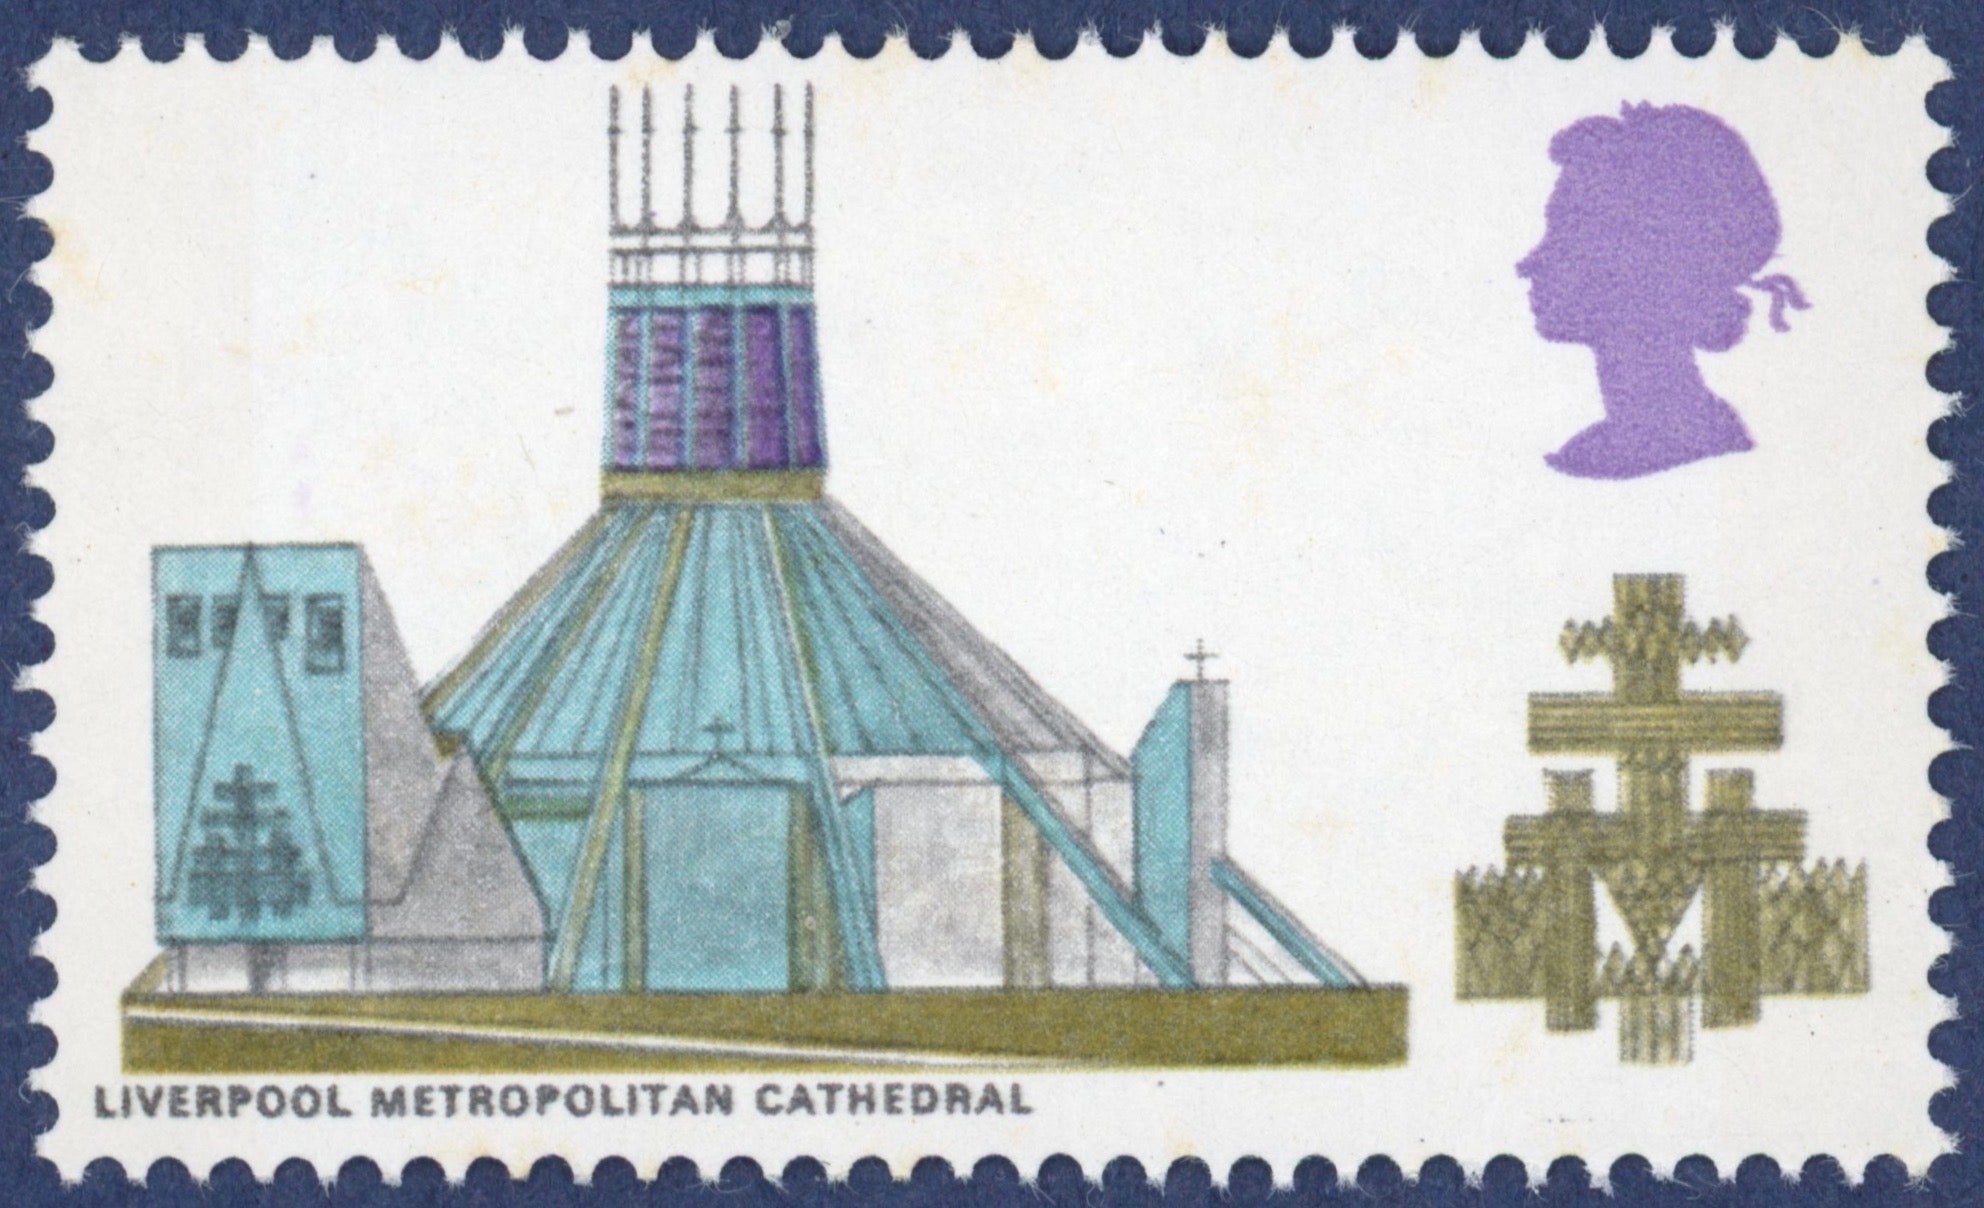 1969 British cathedrals colour error